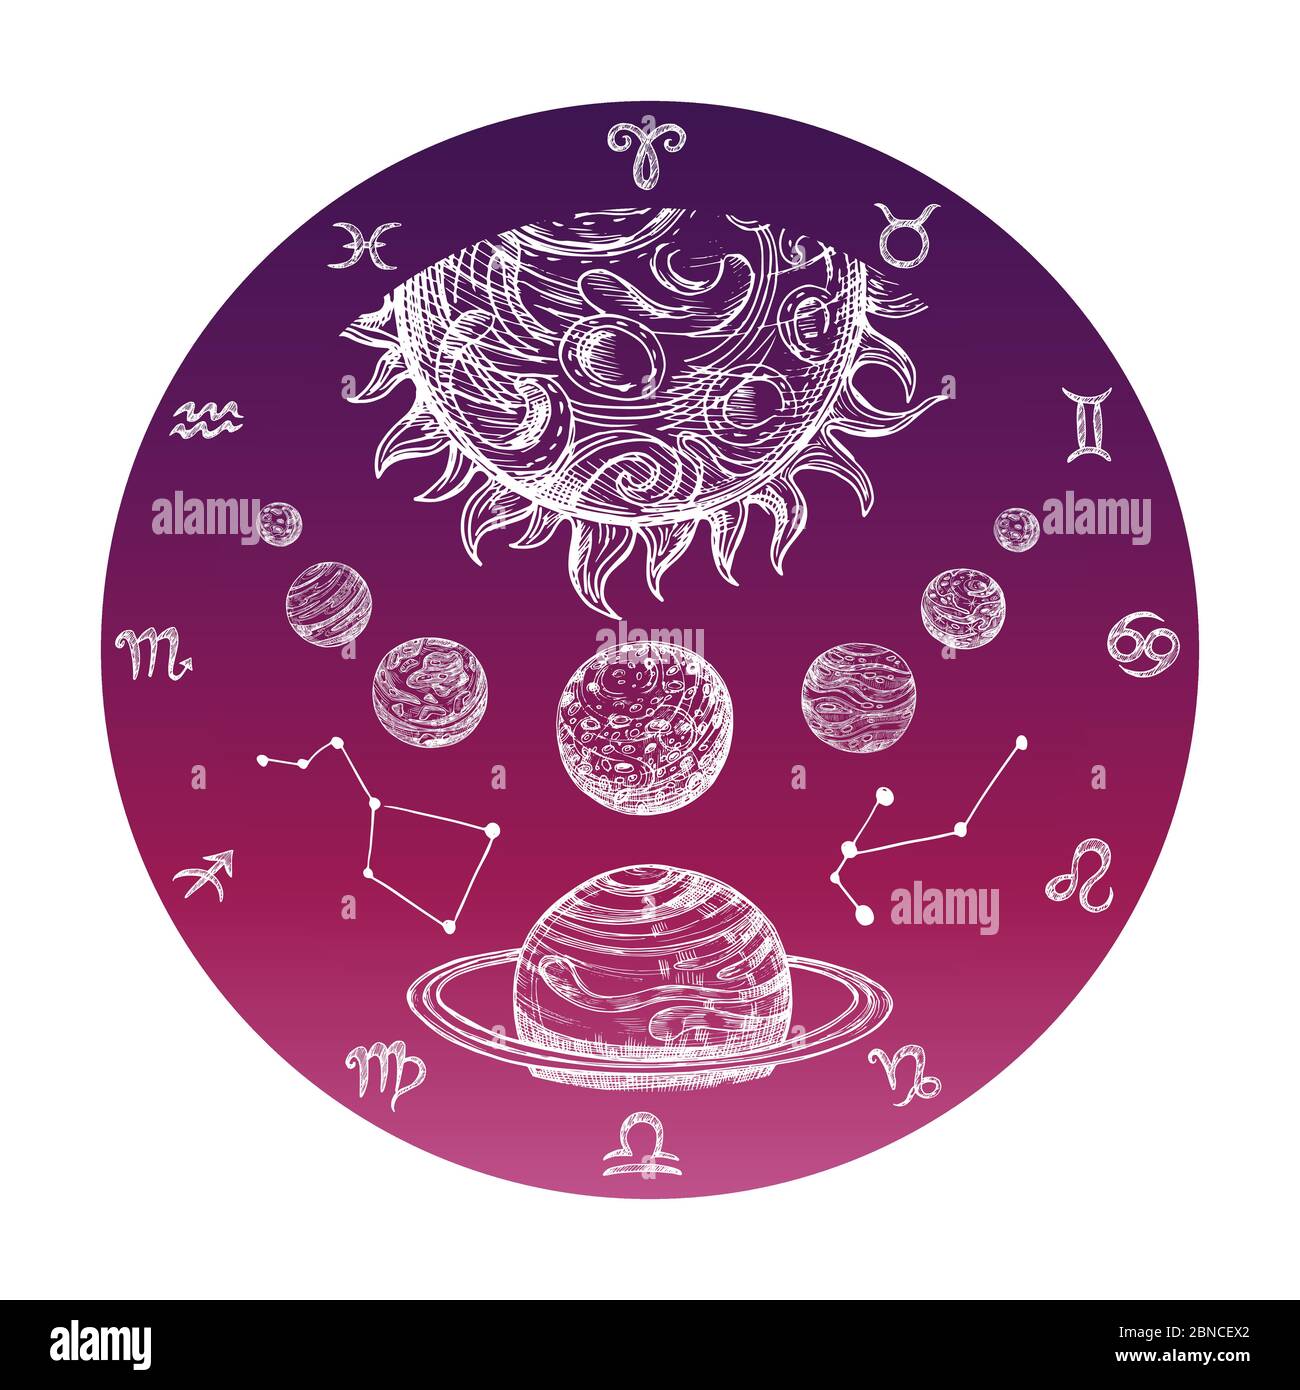 Disegno astrologico a mano a colori con segni zodiacali e illustrazione vettoriale del sistema planetario. Astrologia e oroscopo simbolo zodiaco Illustrazione Vettoriale